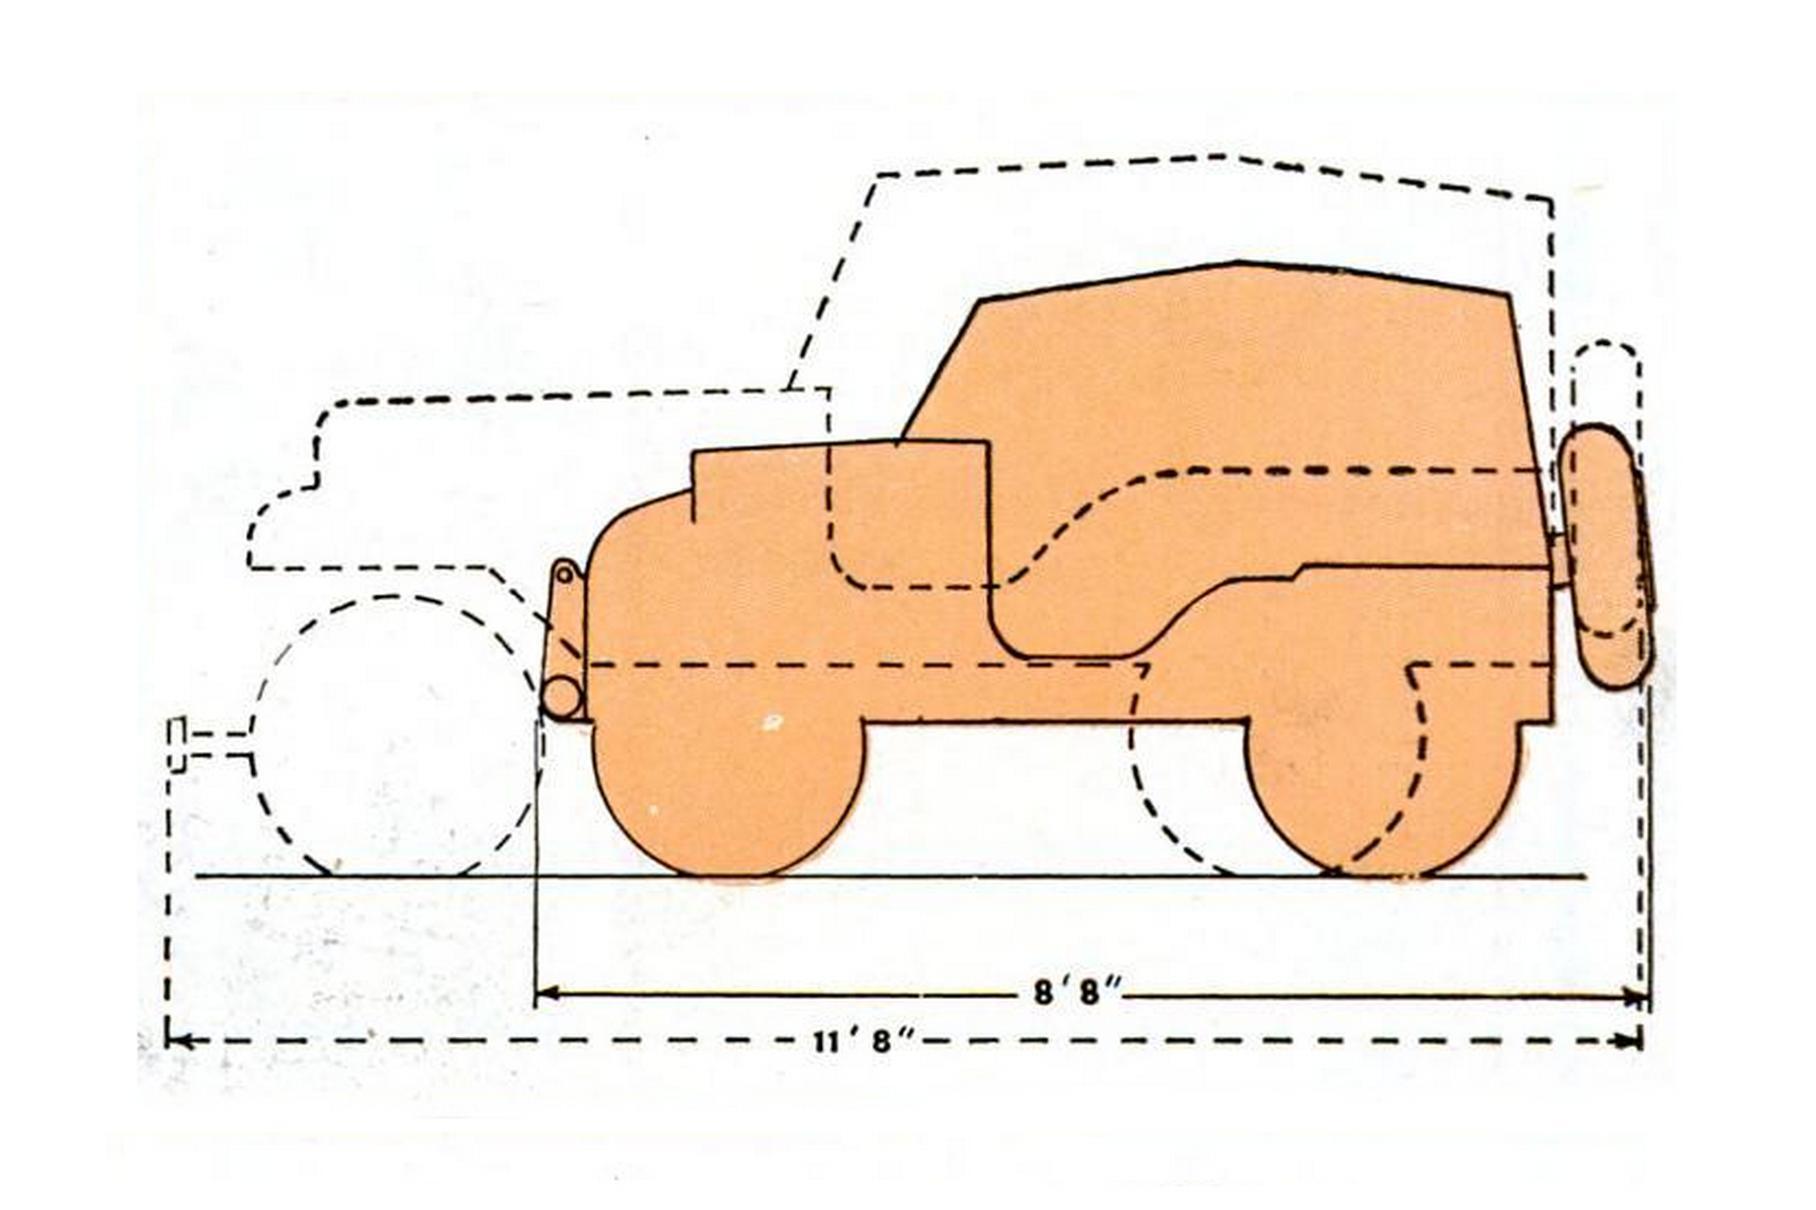 По сравнению с «Могучим клещом» даже небольшой Willys выглядел гигантом: разница в длине превышала 60 сантиметров!